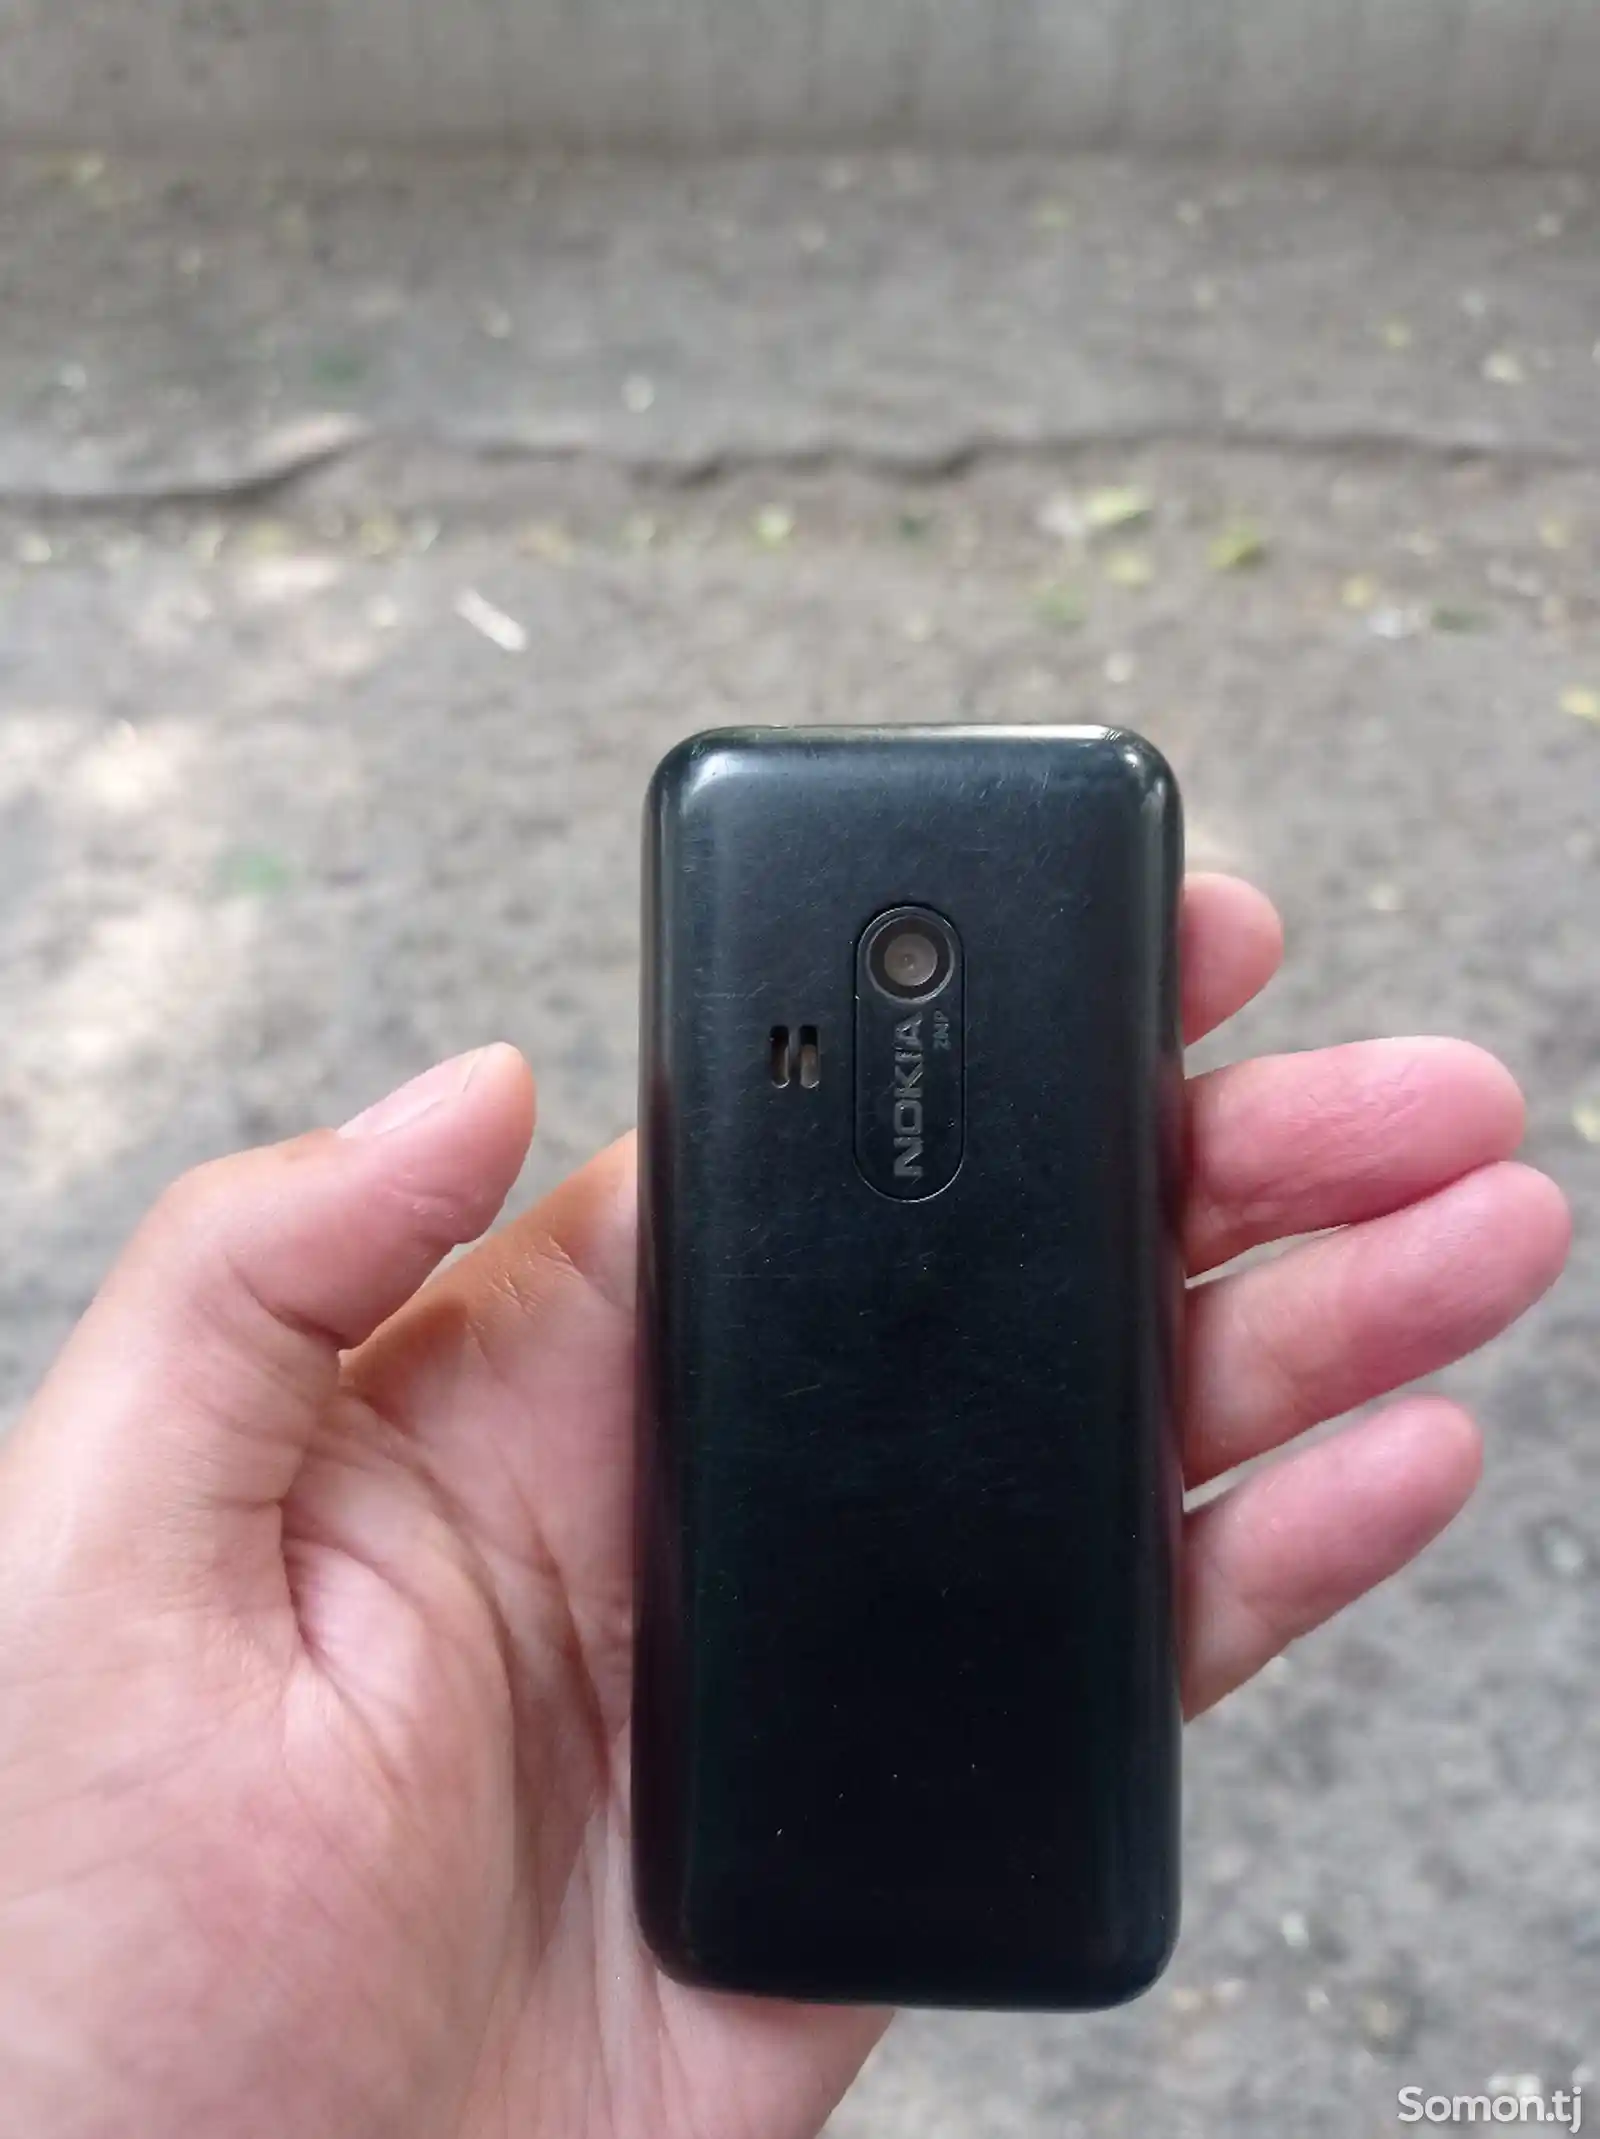 Nokia 220-2